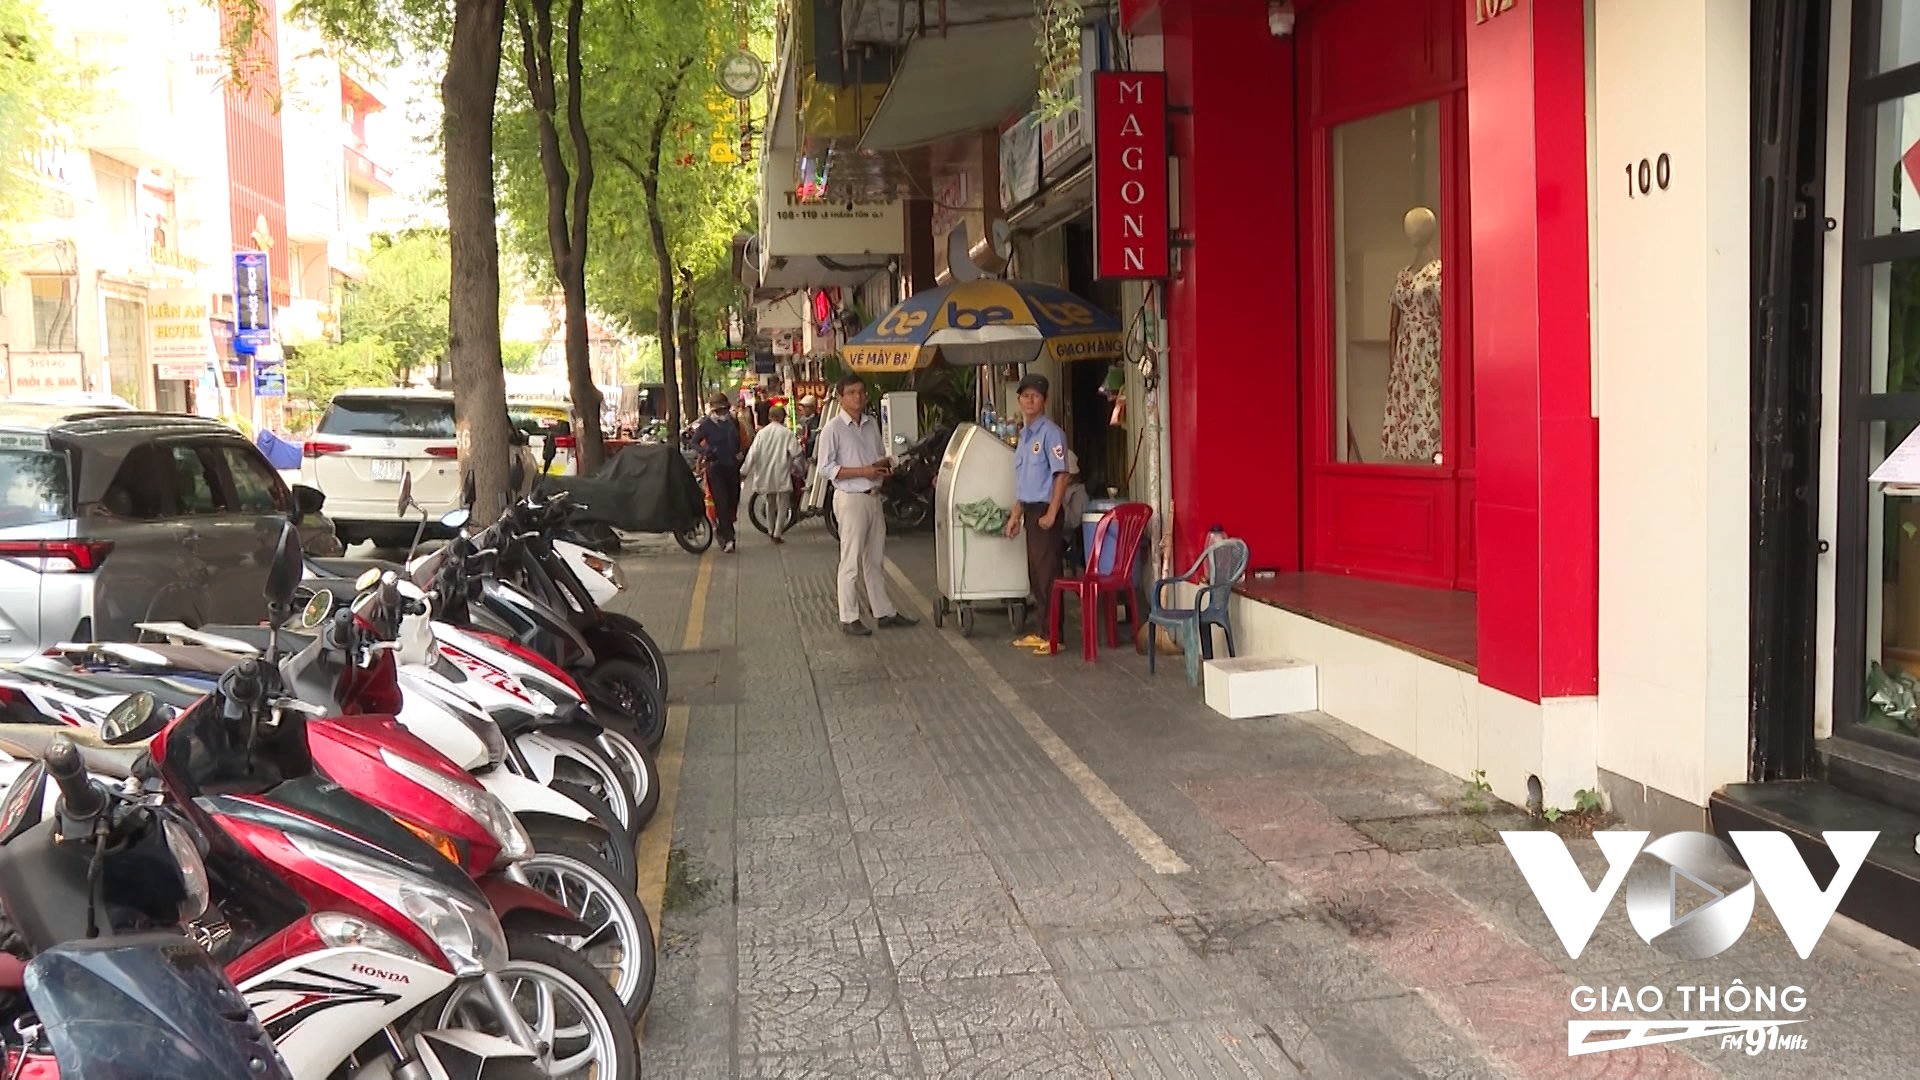 Hè phố trên đường Lê Thánh Tôn, Quận 1 trở nên ngăn nắp, gọn gàng hơn kể từ khi triển khai cho thuê một phần hè phố phục vụ kinh doanh, mua bán từ ngày 9/5 vừa qua.